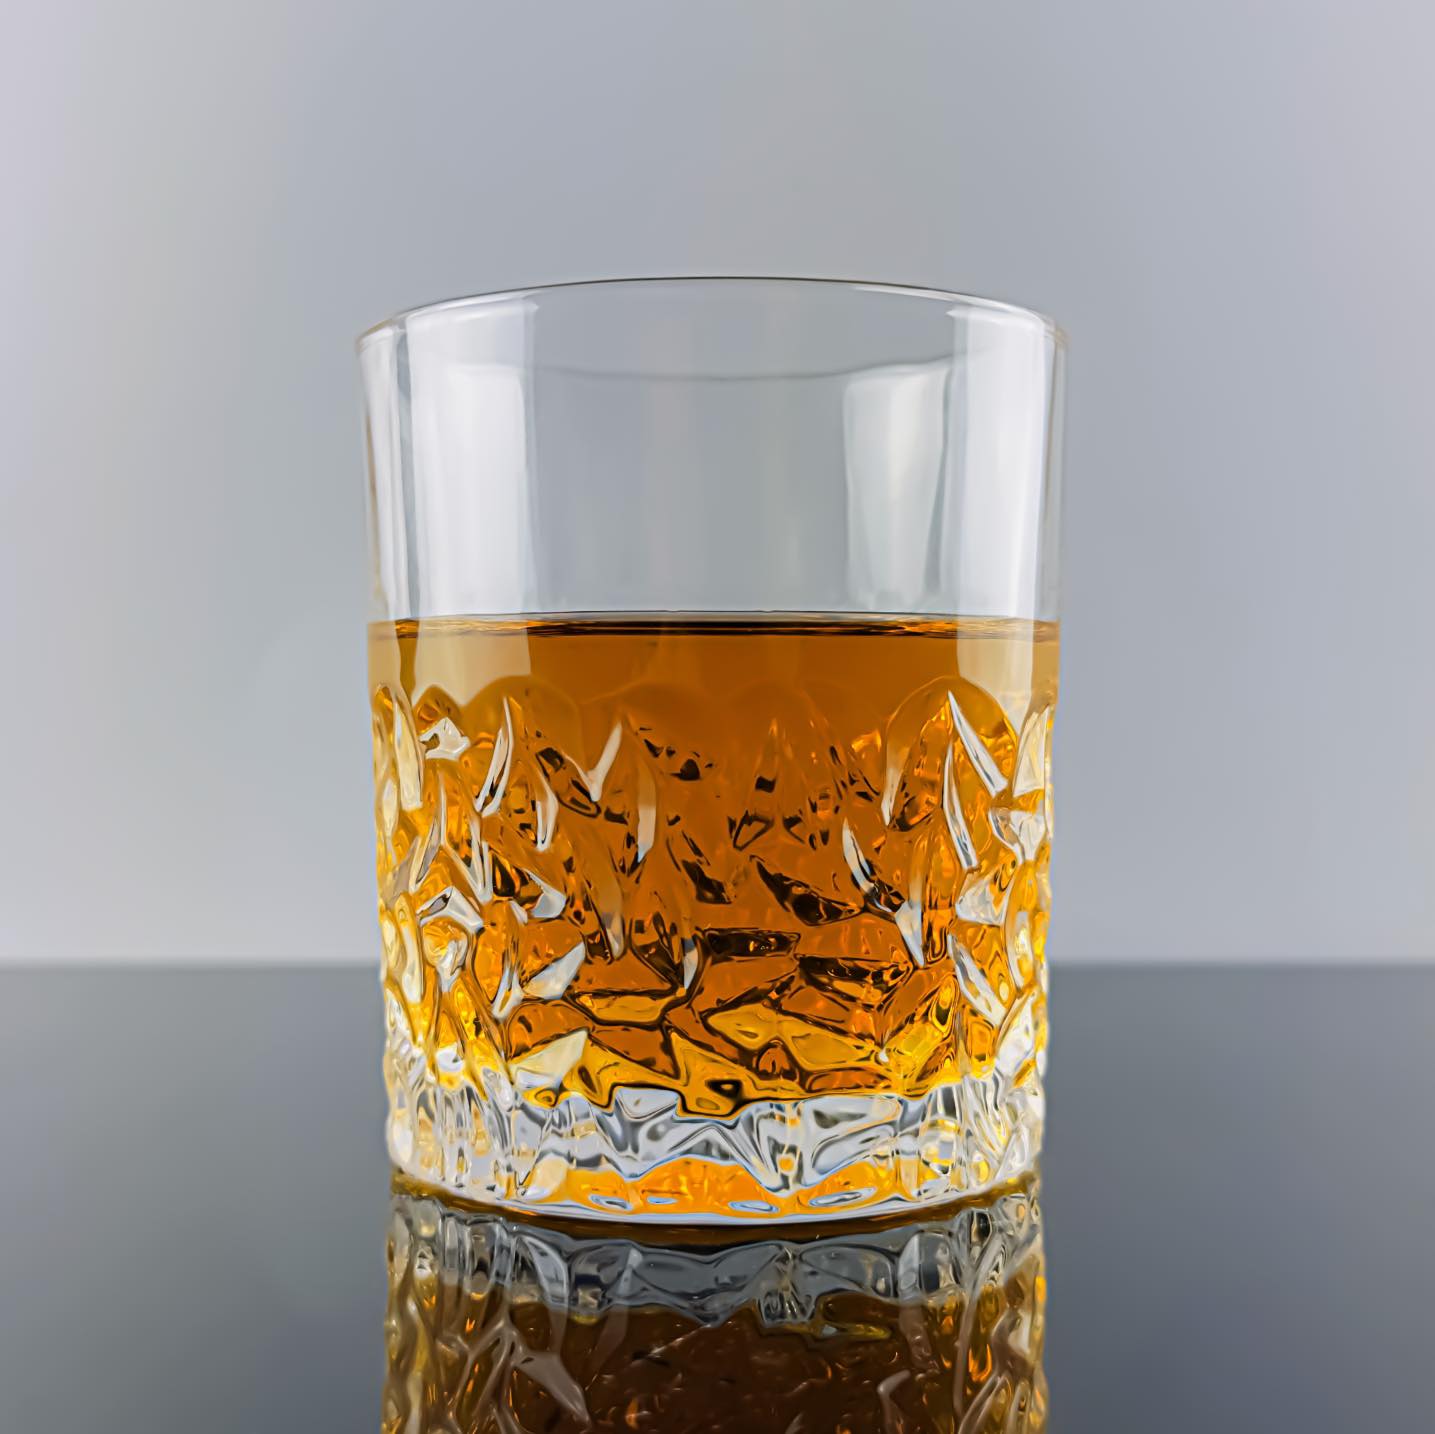 Frosted Bottom Heavy Based Whisky Glass - Solkatt Designs 